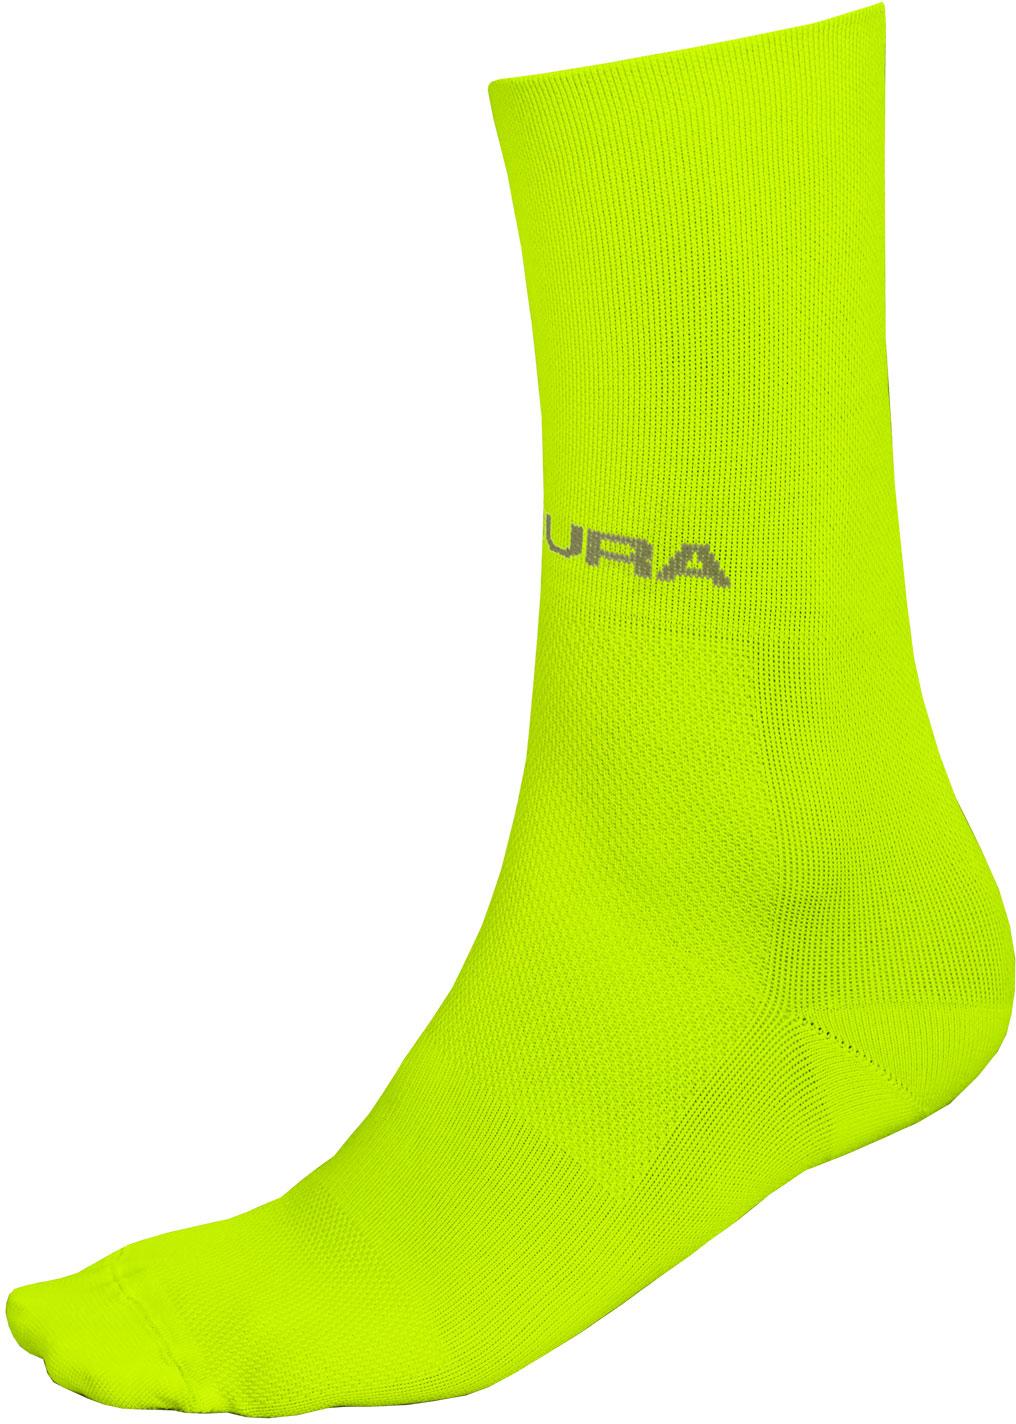 Endura Pro Sl Cycling Sock Ii - Hi-viz Yellow